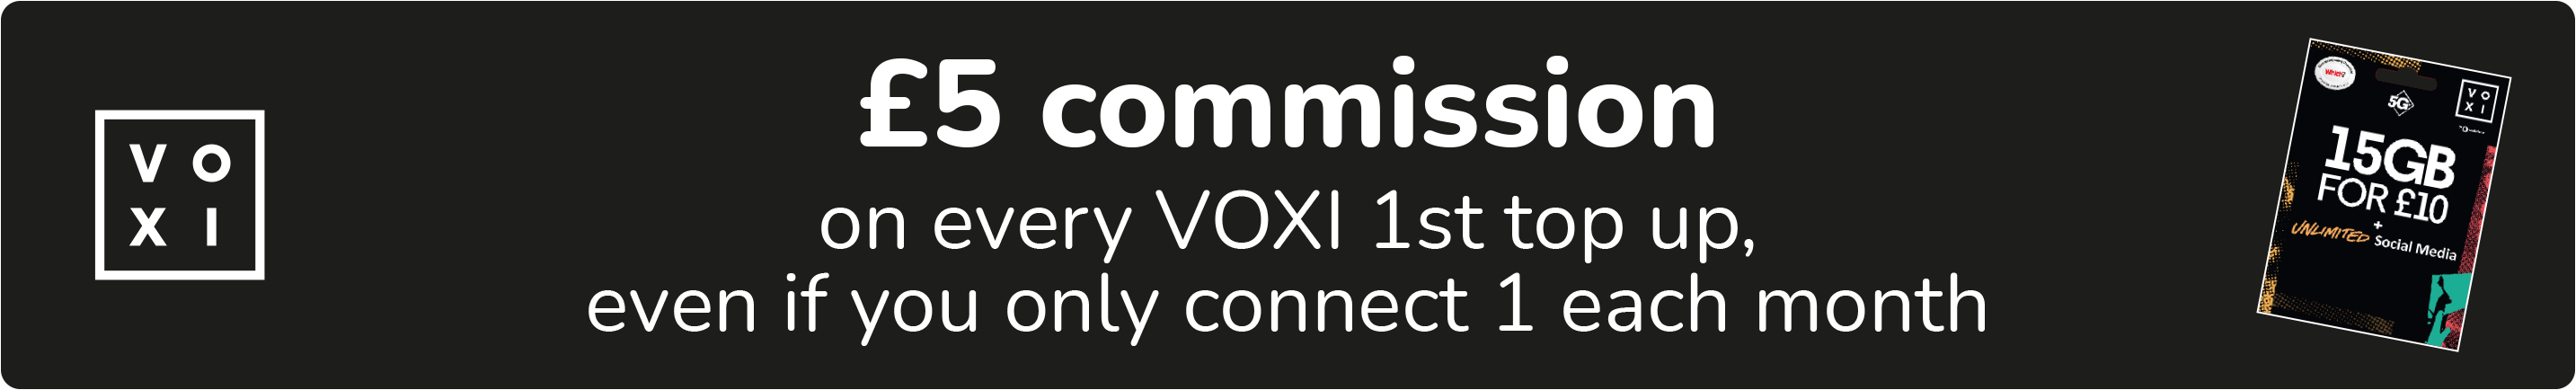 Voxi commission